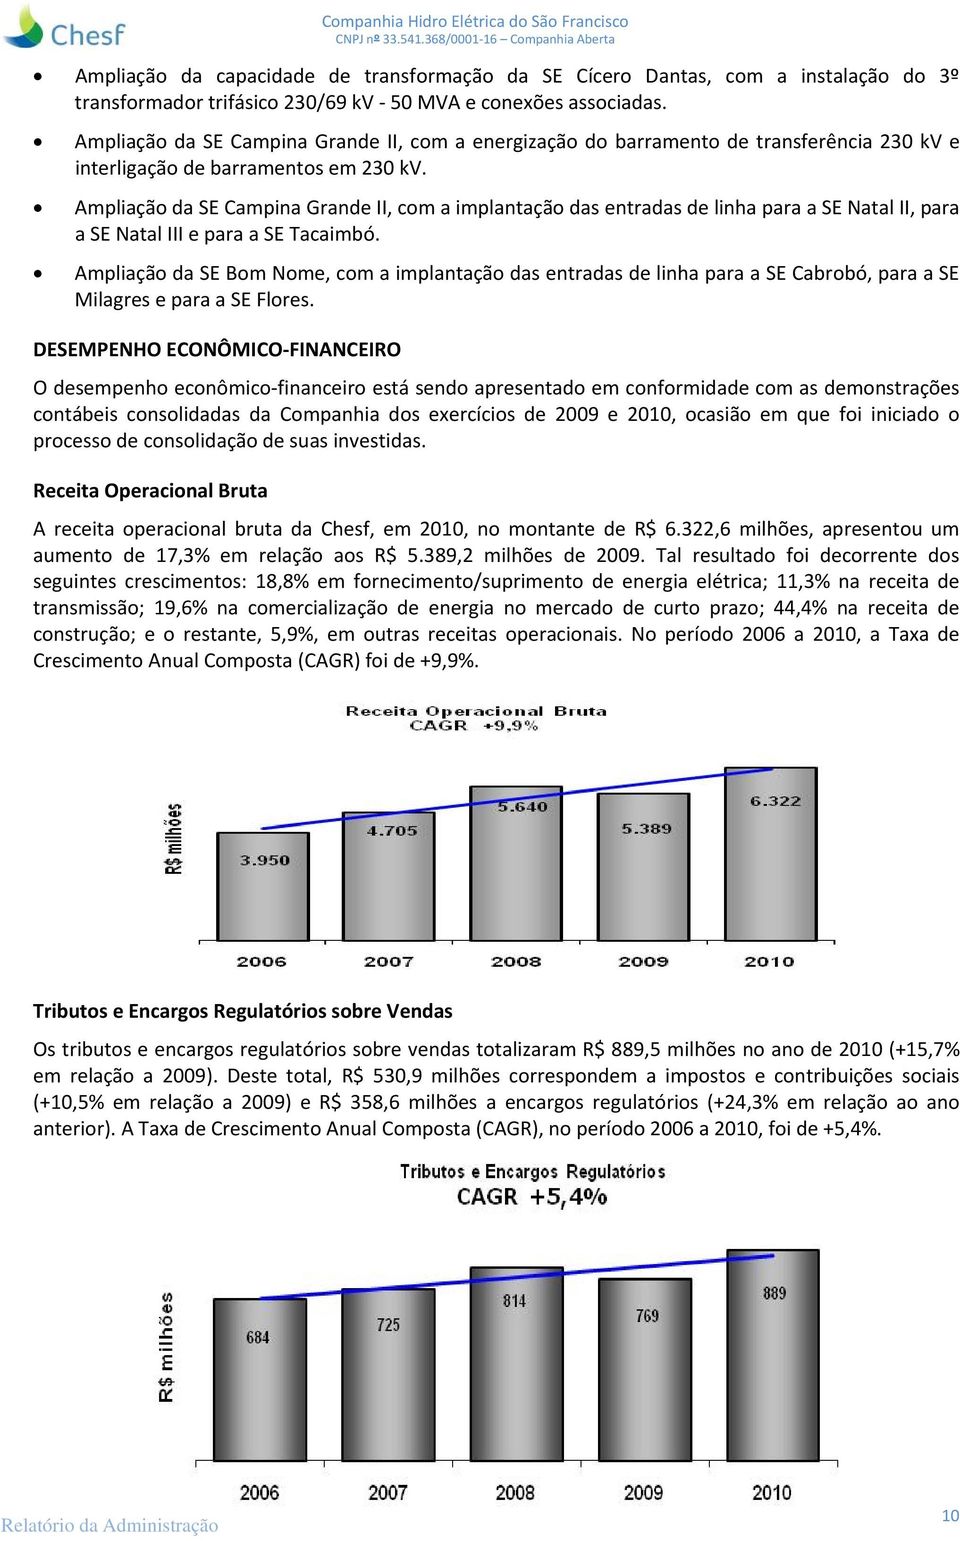 Ampliação da SE Campina Grande II, com a implantação das entradas de linha para a SE Natal II, para a SE Natal III e para a SE Tacaimbó.